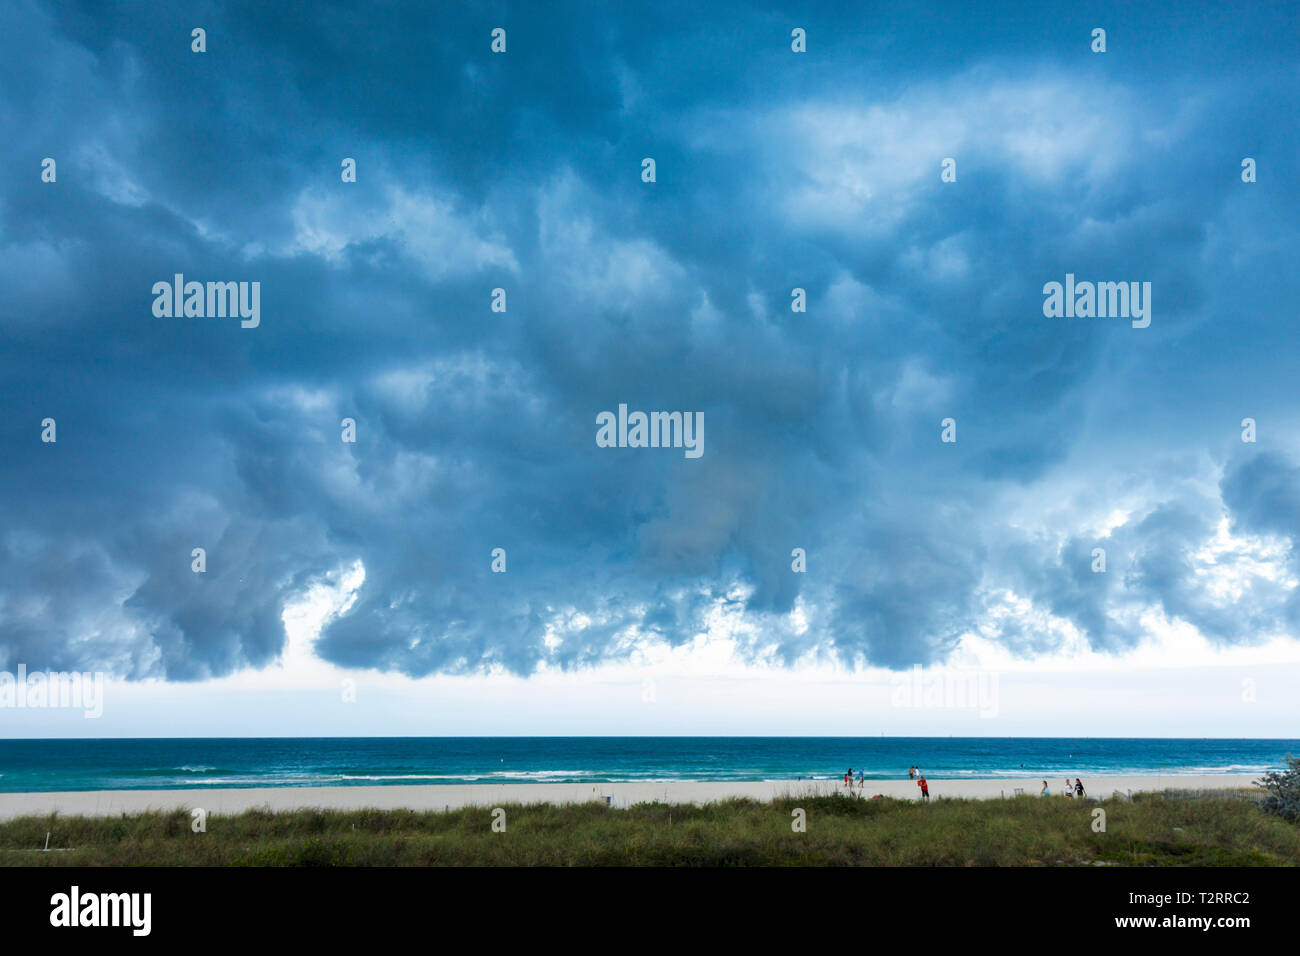 Miami Beach Florida, Atlantischer Ozean, Wasser, Kaltfront, Wetter, Sturm, stürmisch, grau, Wolken, bewölkt, bedrohlich, ominös, dunkler Himmel, FL090417031 Stockfoto